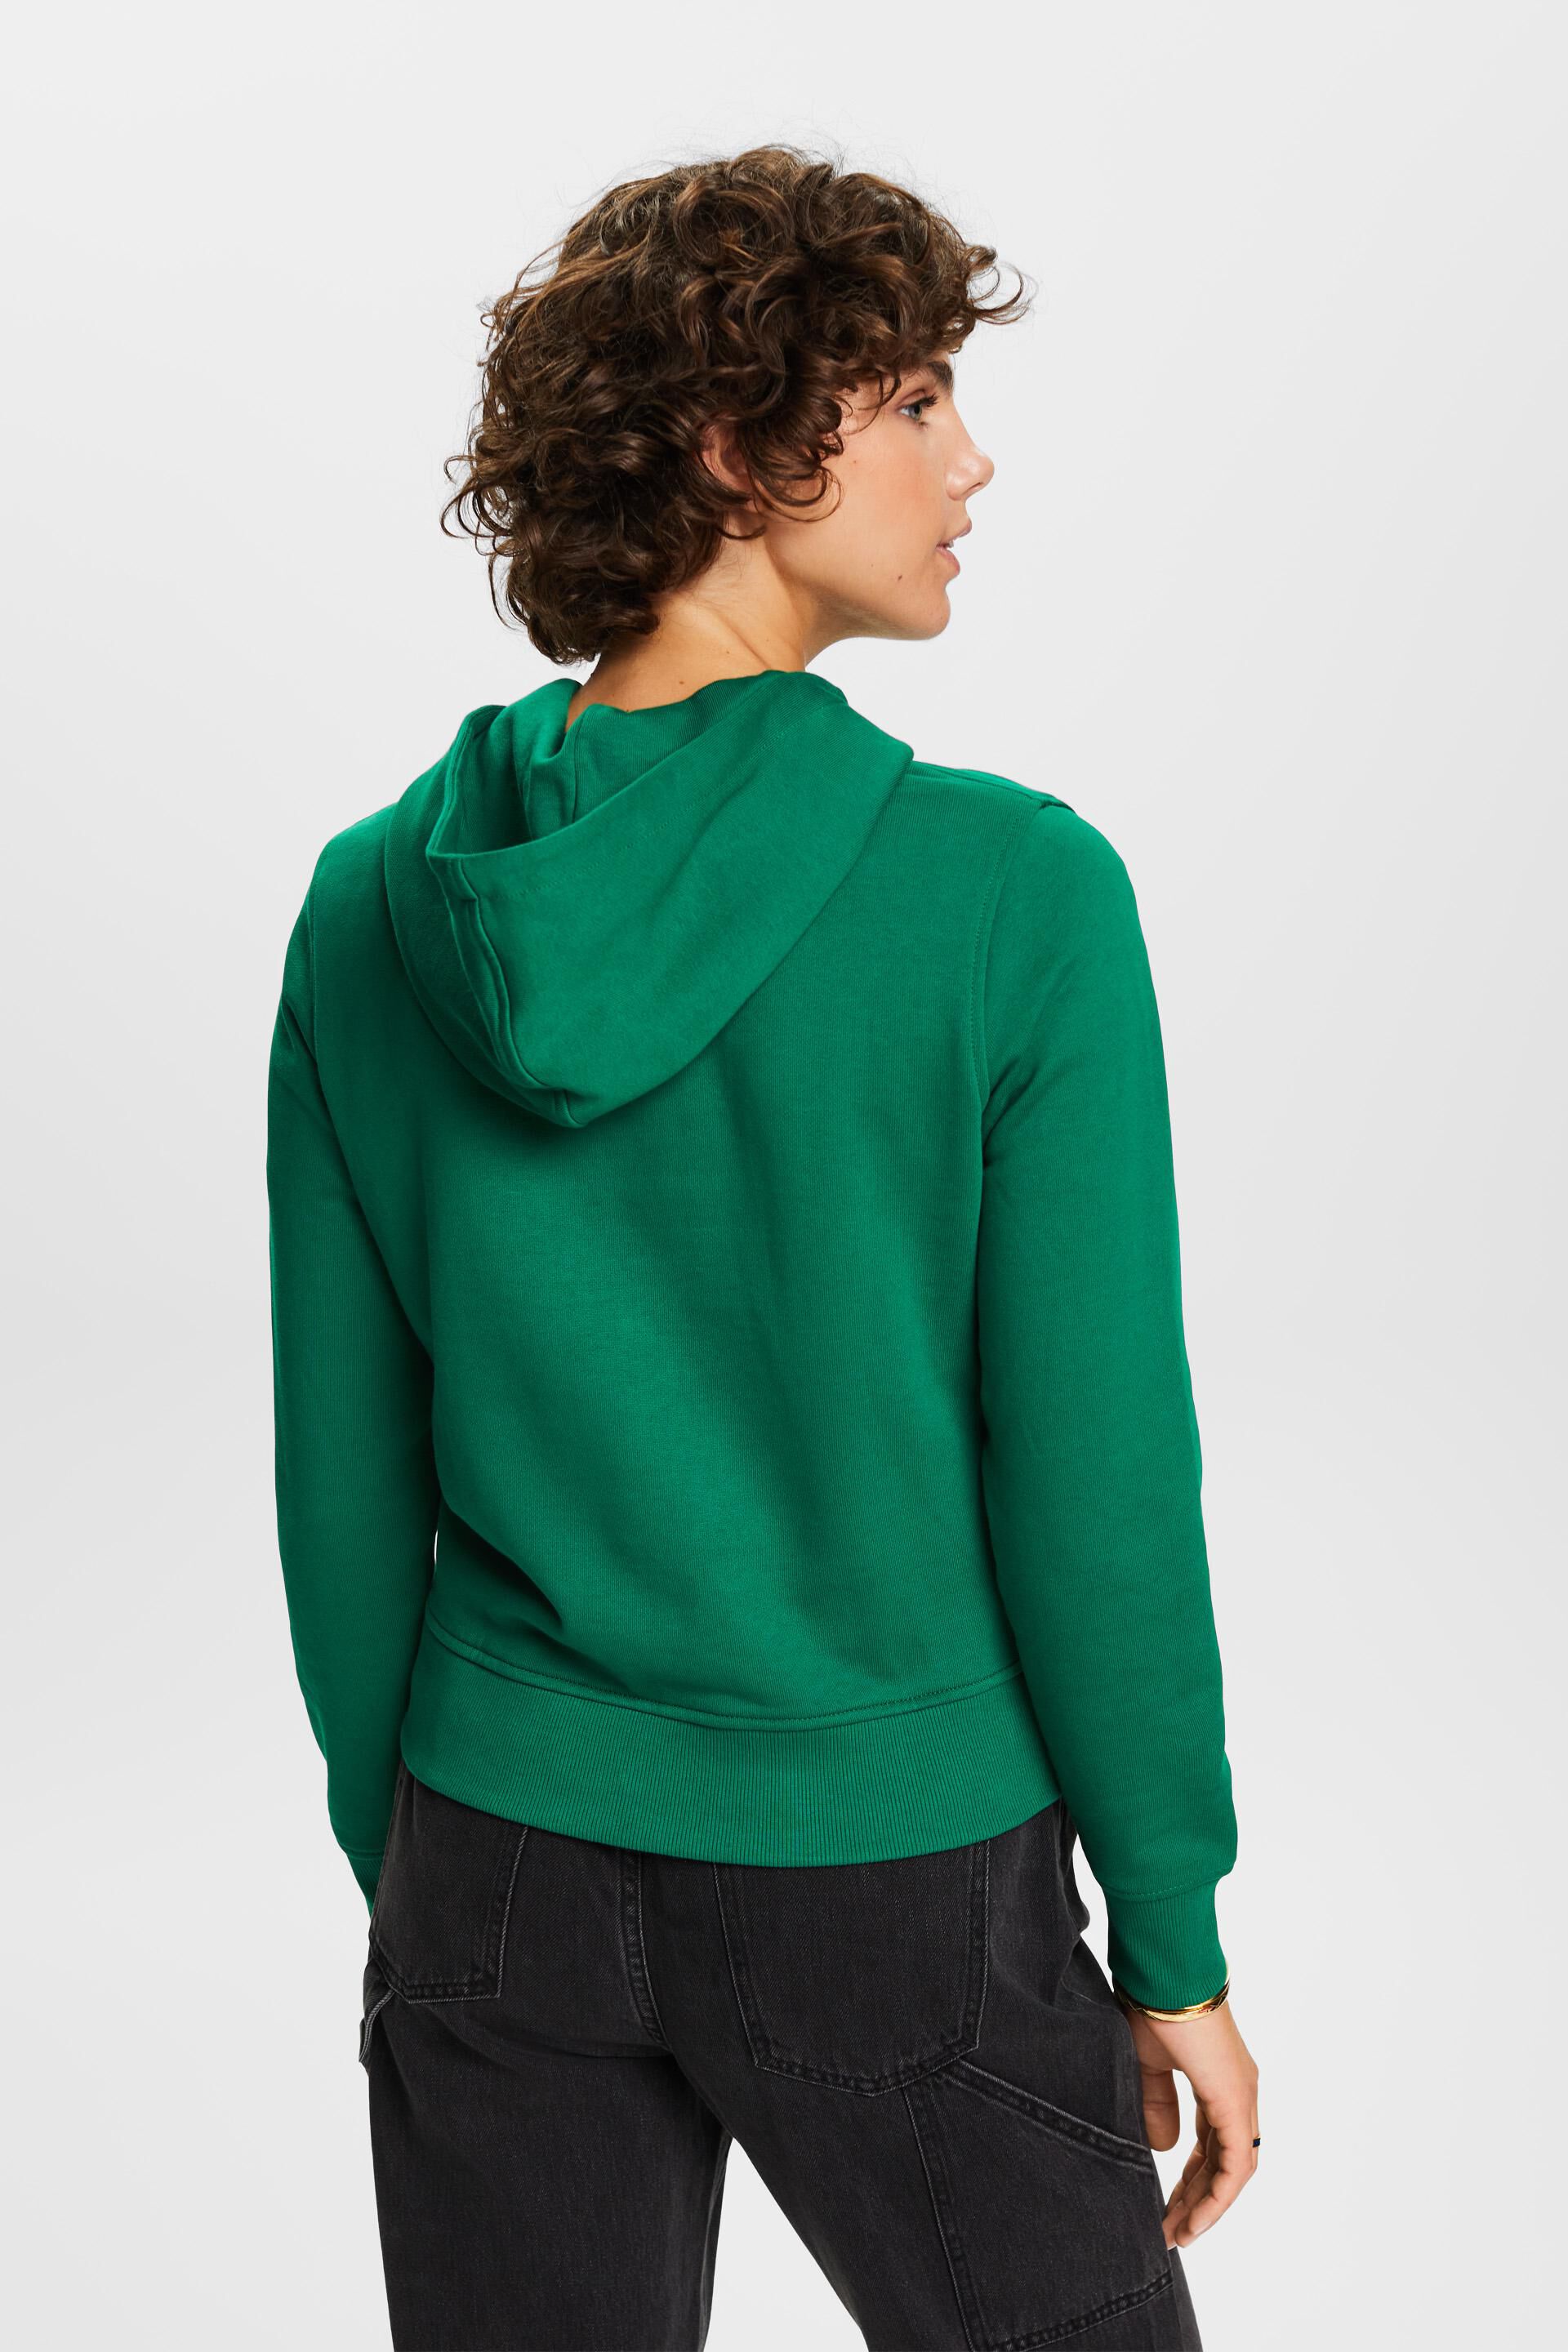 Esprit Damen Kapuzenpullover mit aufgesticktem Bio-Baumwolle Logo